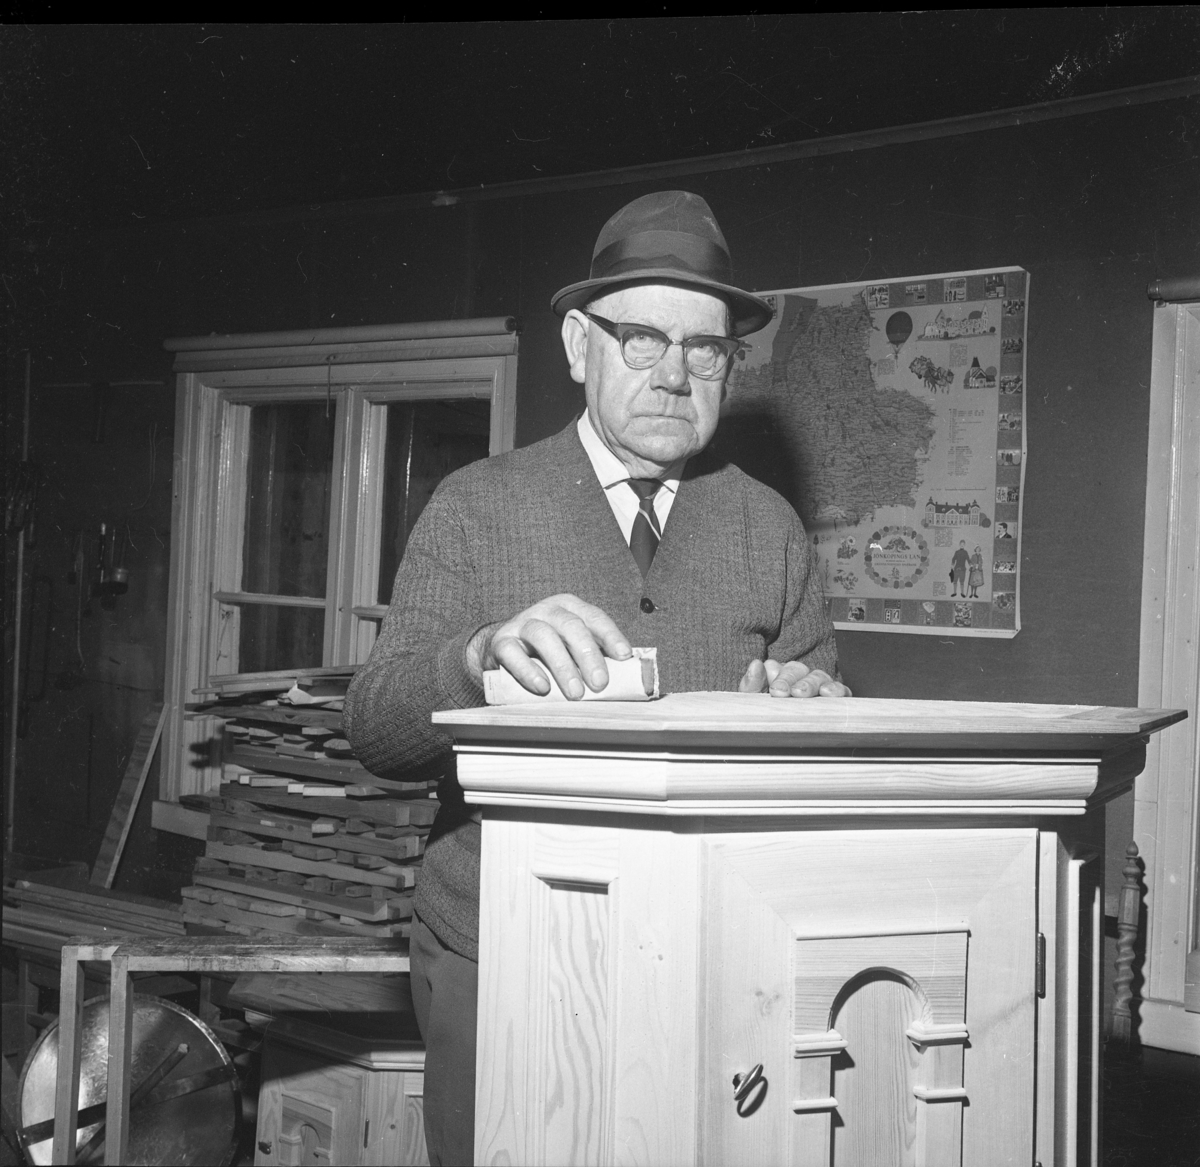 Vaktmästaren och snickaren Gunnar Berglund, med glasögon och hatt på huvudet, står troligen i en snickarbod med ett skåp som han har tillverkat.